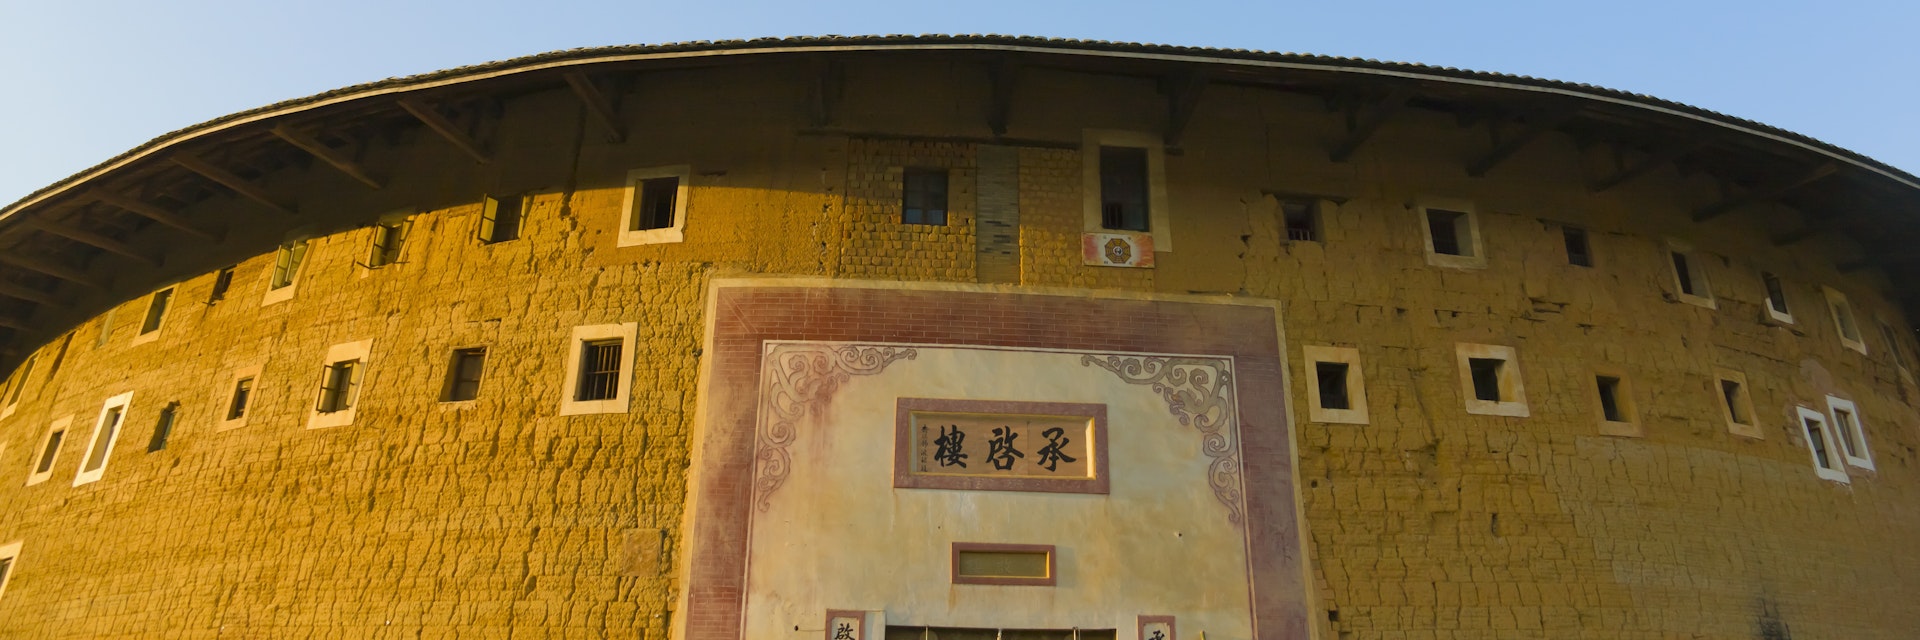 Chengqi Tulou in Gaobei Tulou Cluster, UNESCO World Heritage site, Yongding, Fujian, China